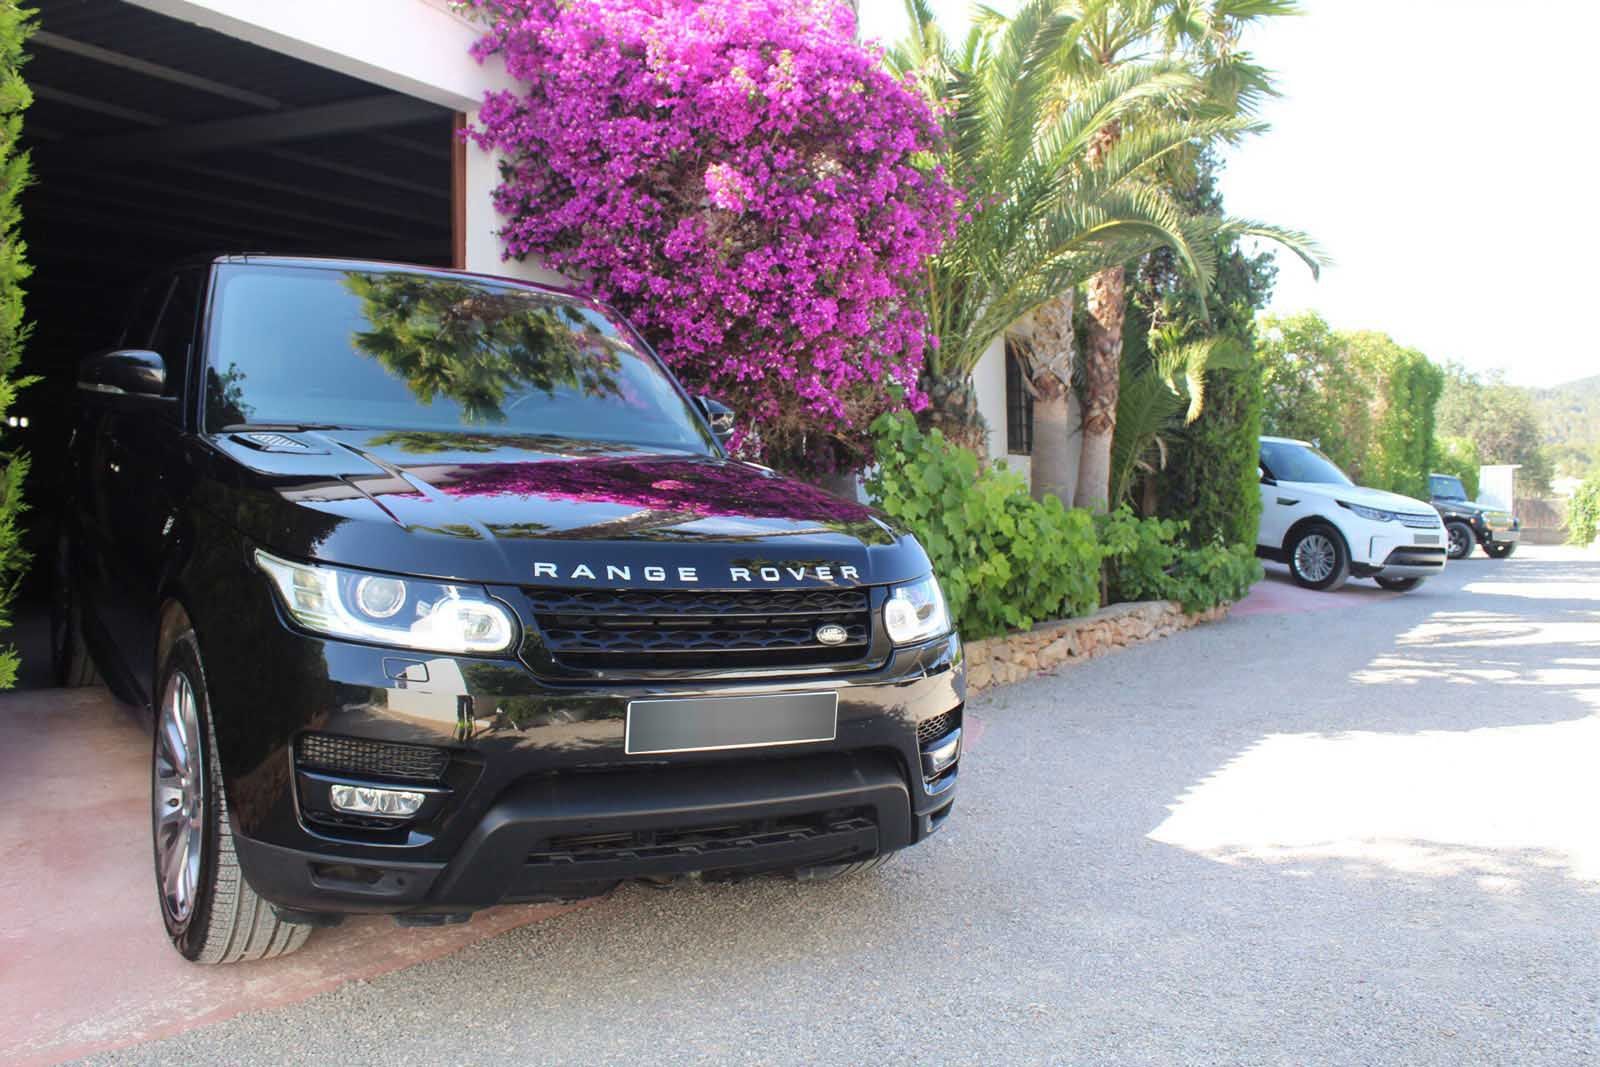 Parking y custodia de vehículos Ibiza